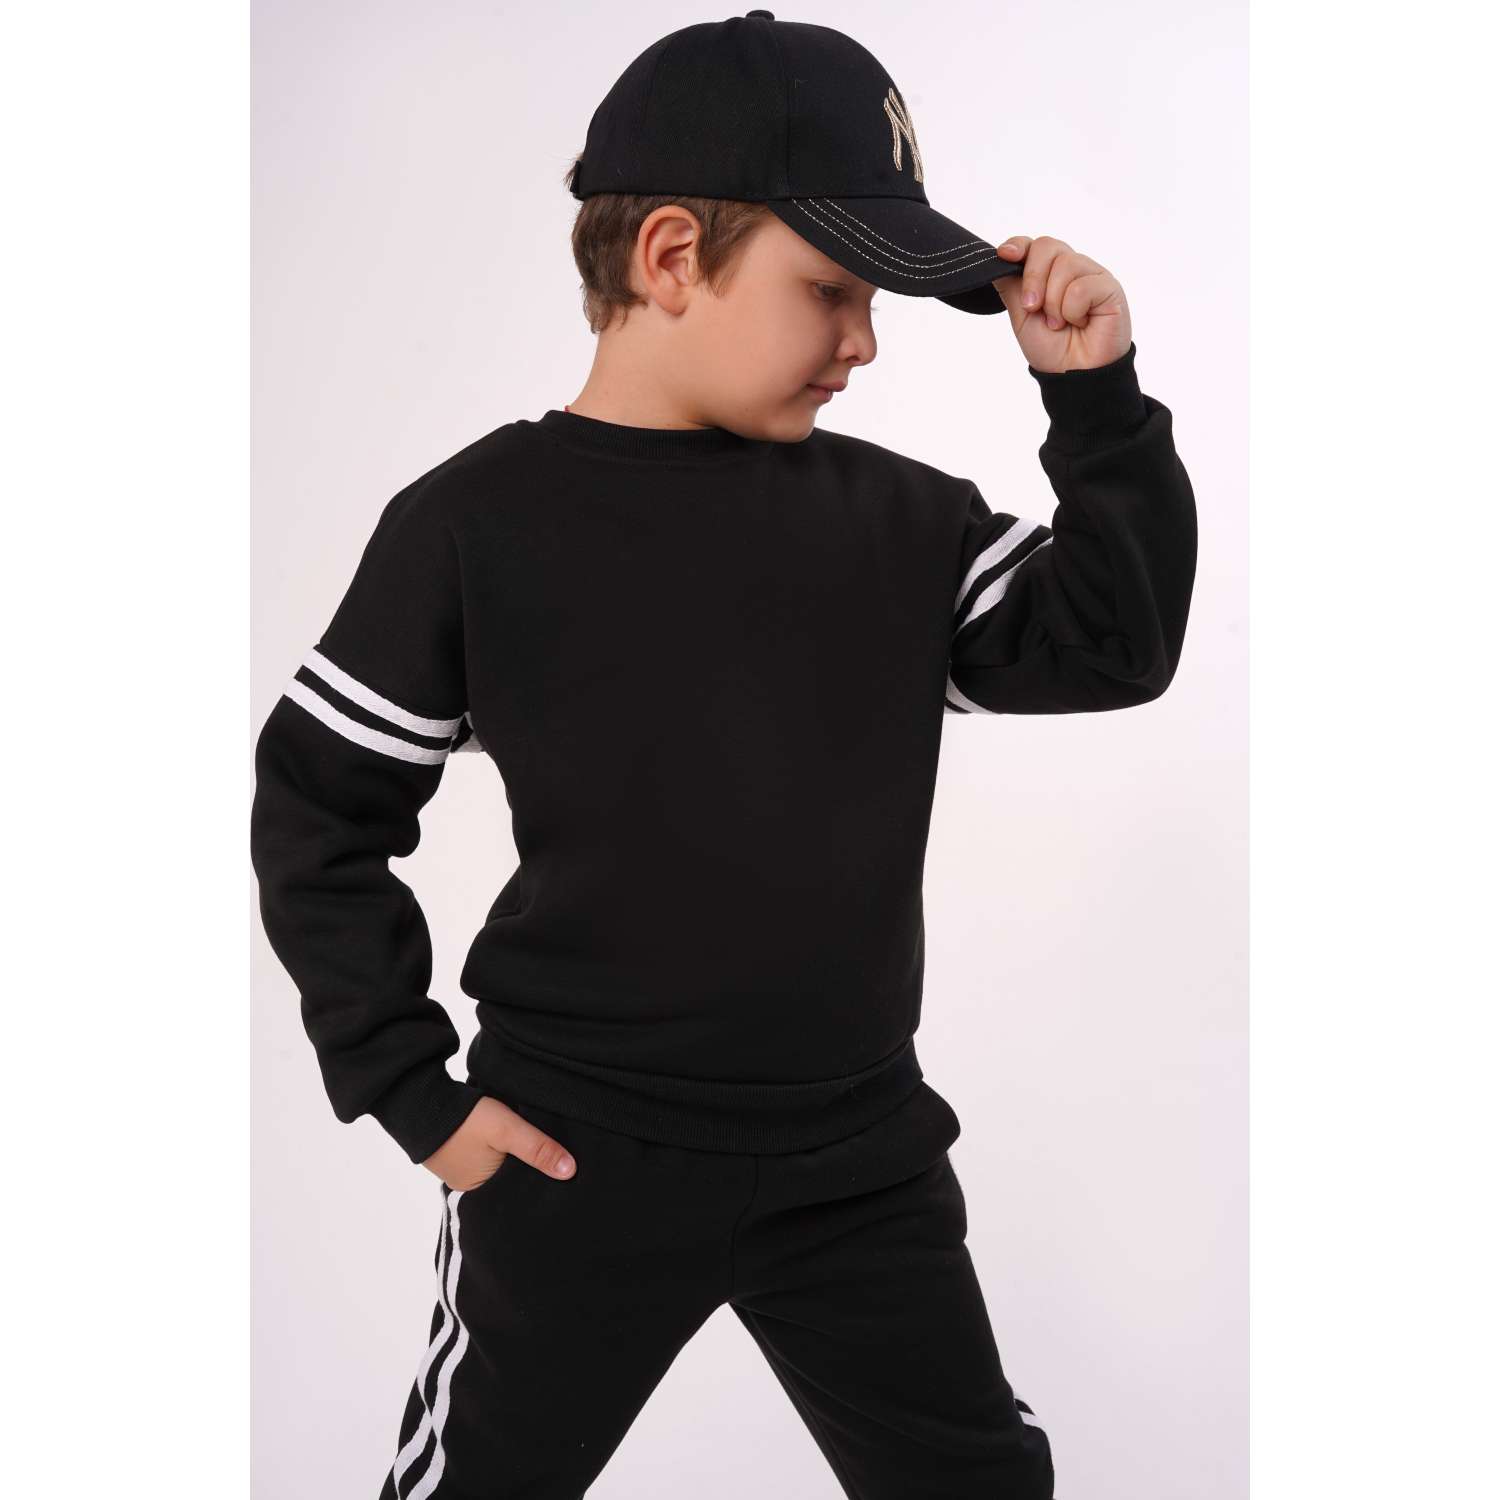 Спортивный костюм BabyDreams KS10/черный костюм для малыша - фото 3